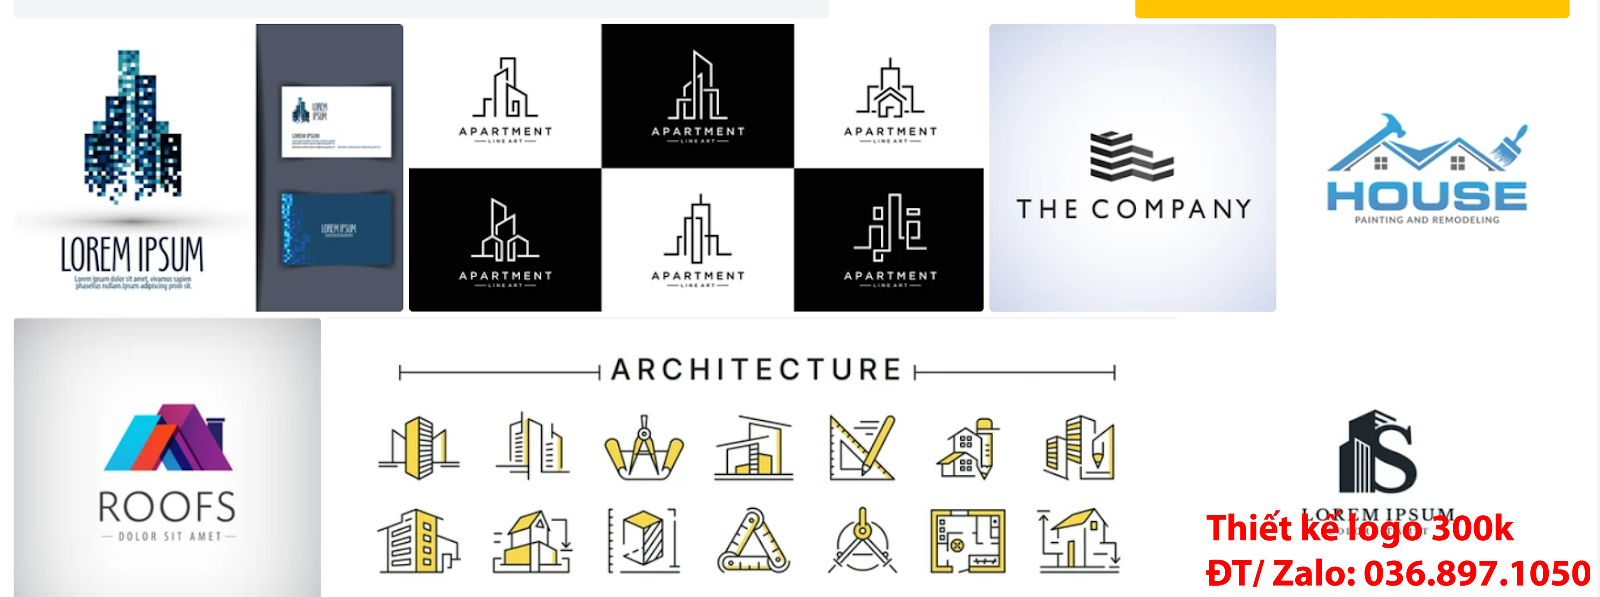 Công ty nhận tạo mẫu thiết kế logo công ty kiến trúc đẹp giá rẻ chất lượng